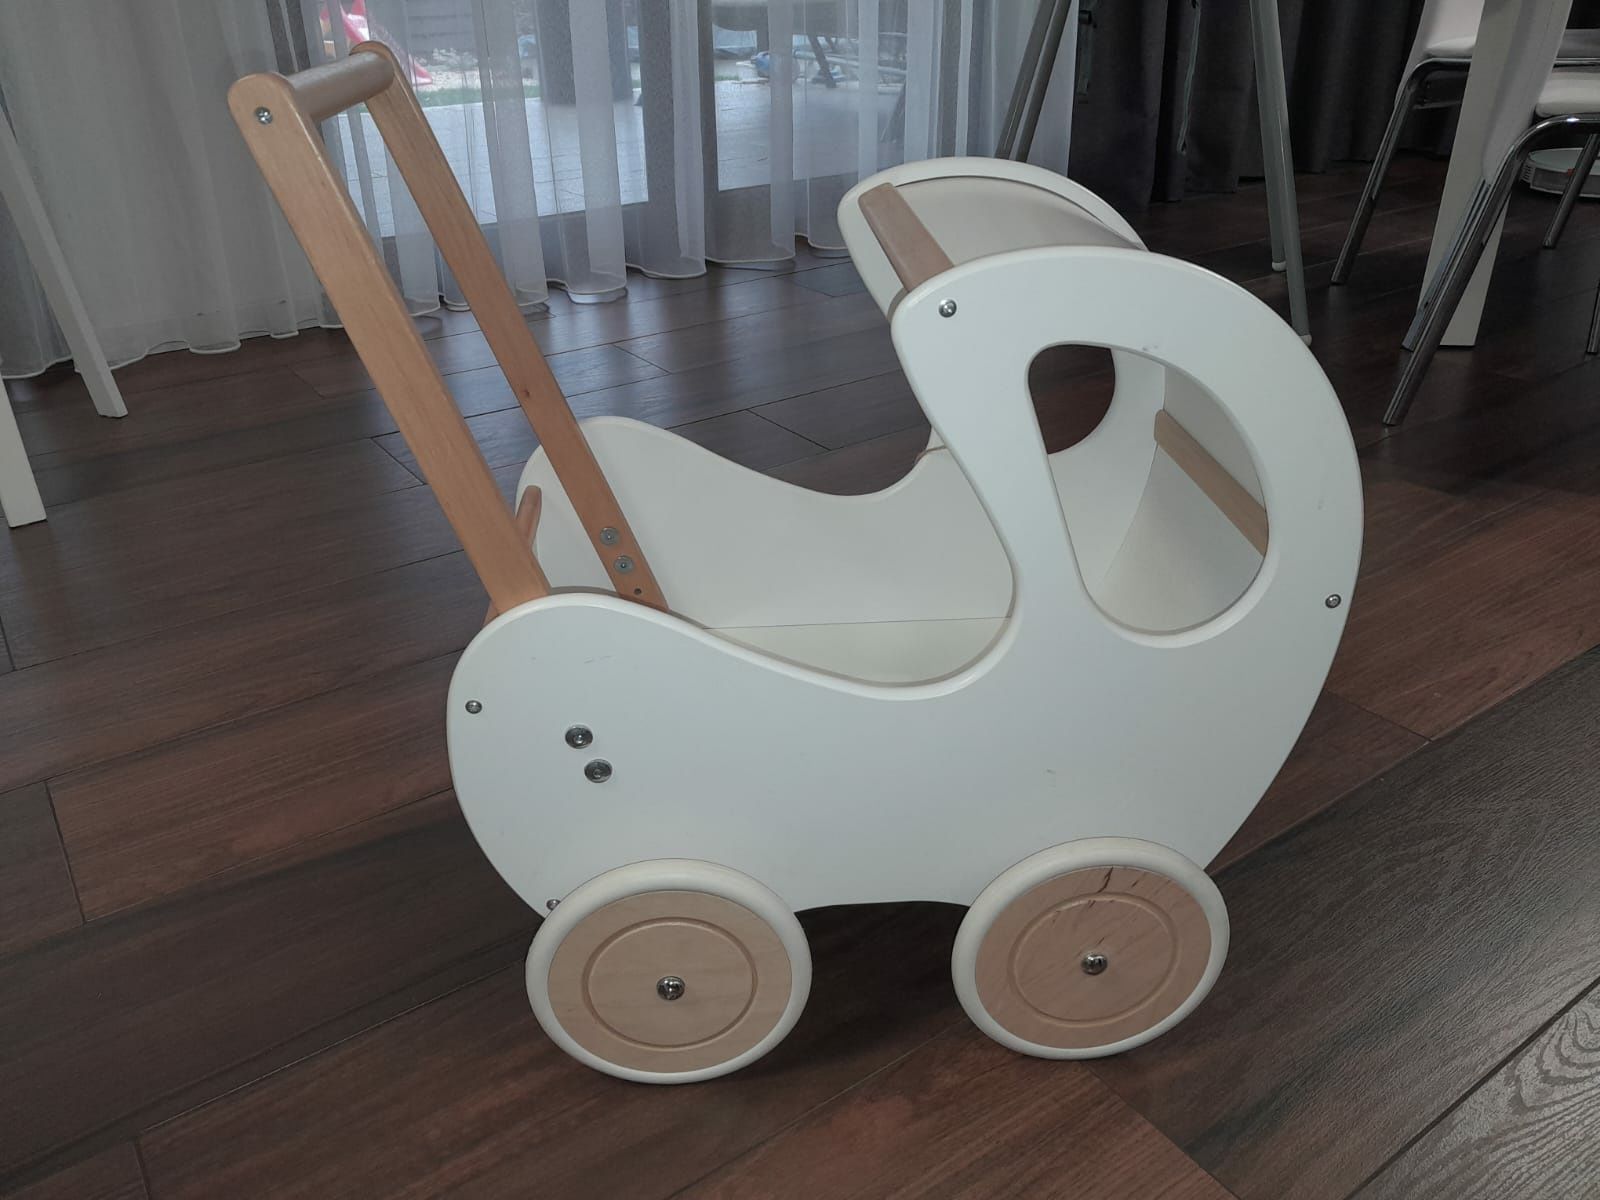 Drewniany wózek dla lalek pchacz RETRO baby concept, jak nowy!